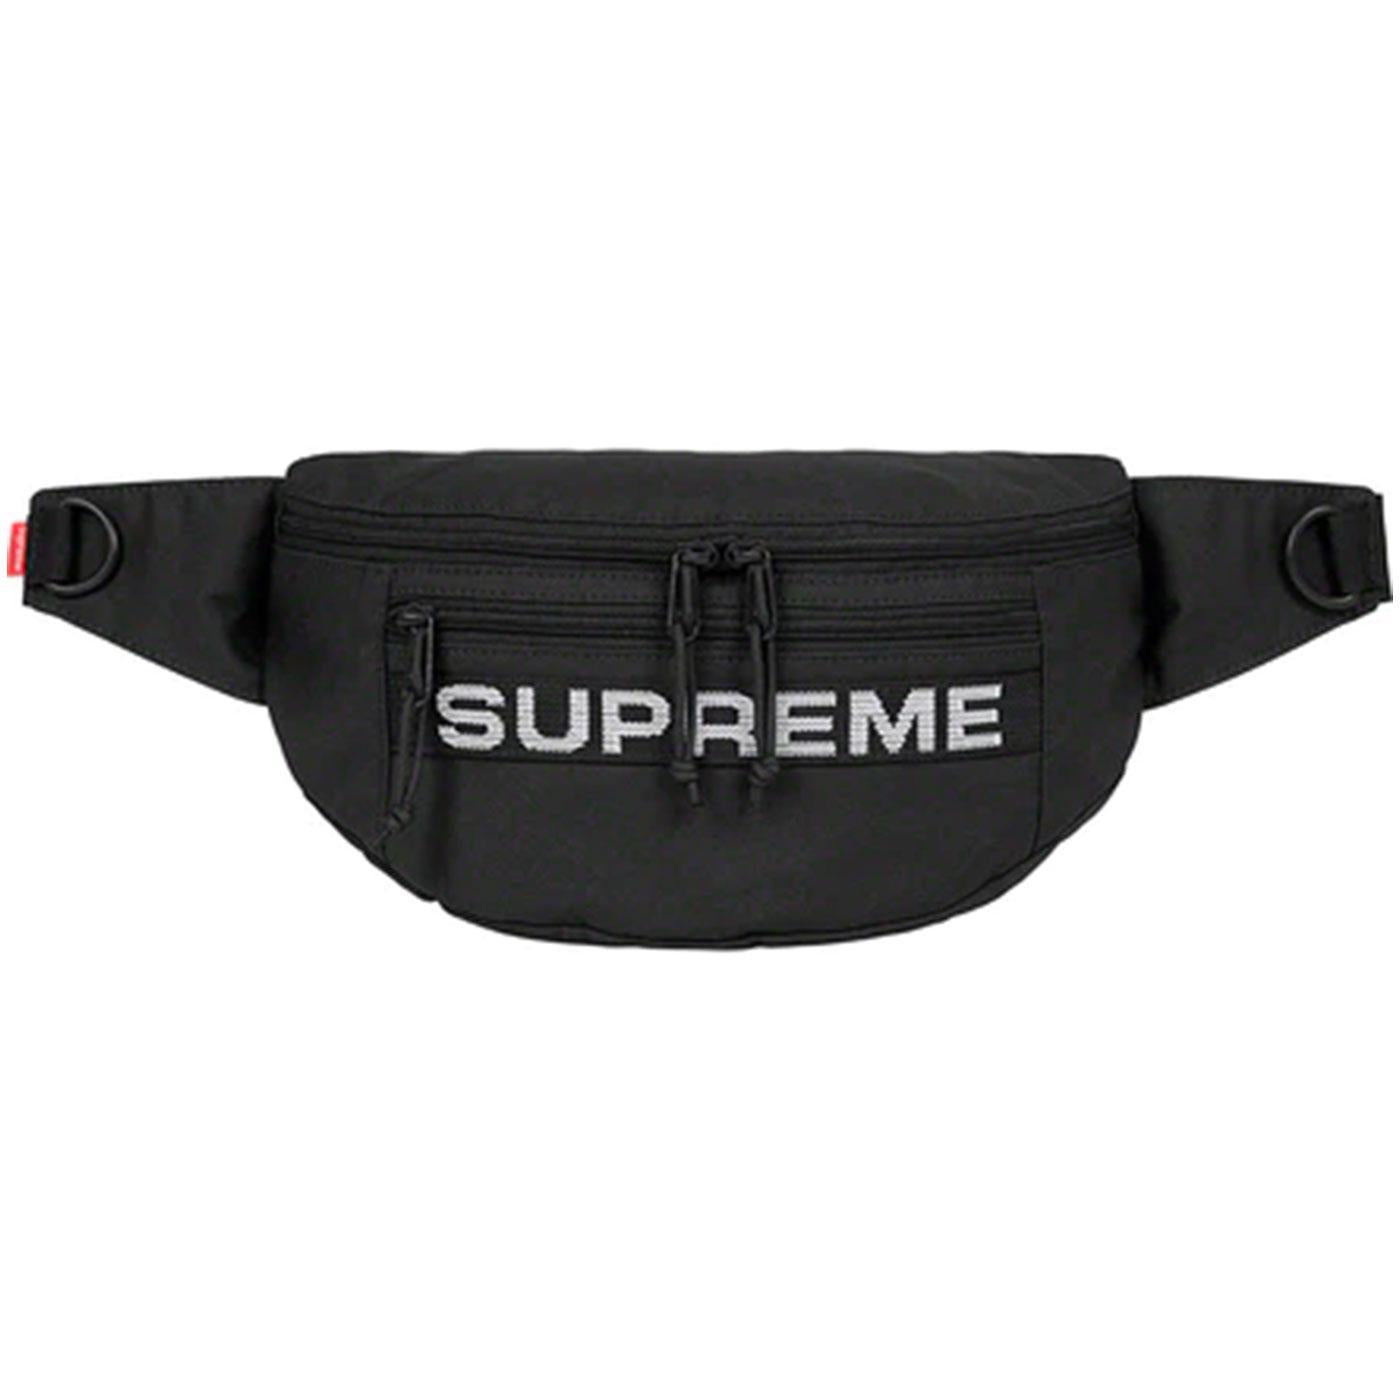 New Supreme Shoulder Bag SS18 Black Red Blue Unisex Nepal